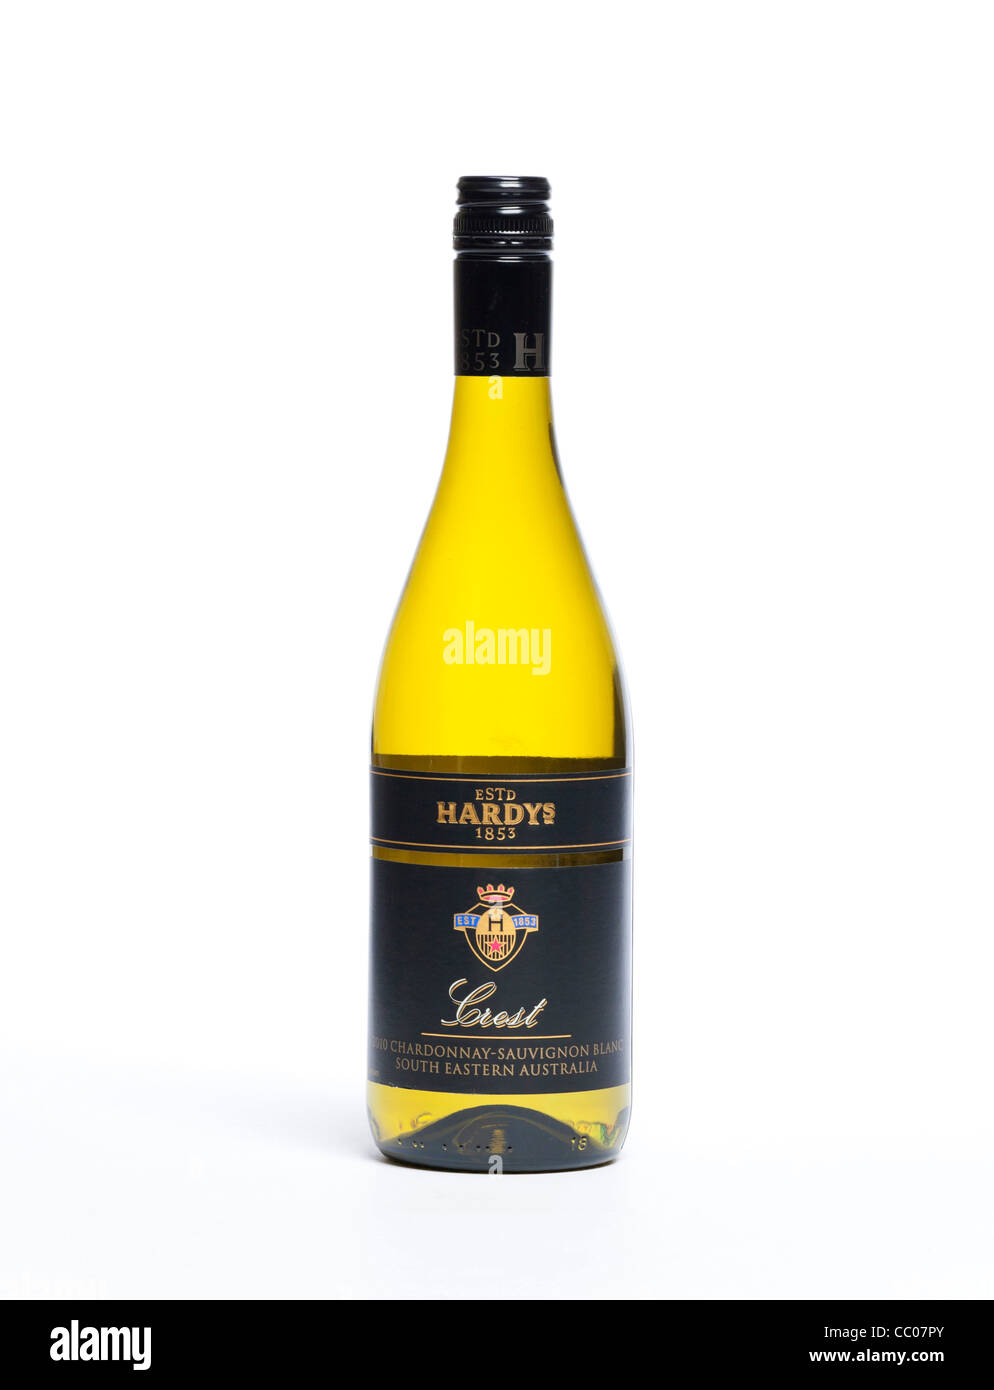 Hardys Chardonnay Sauvignon crest wine Stock Photo